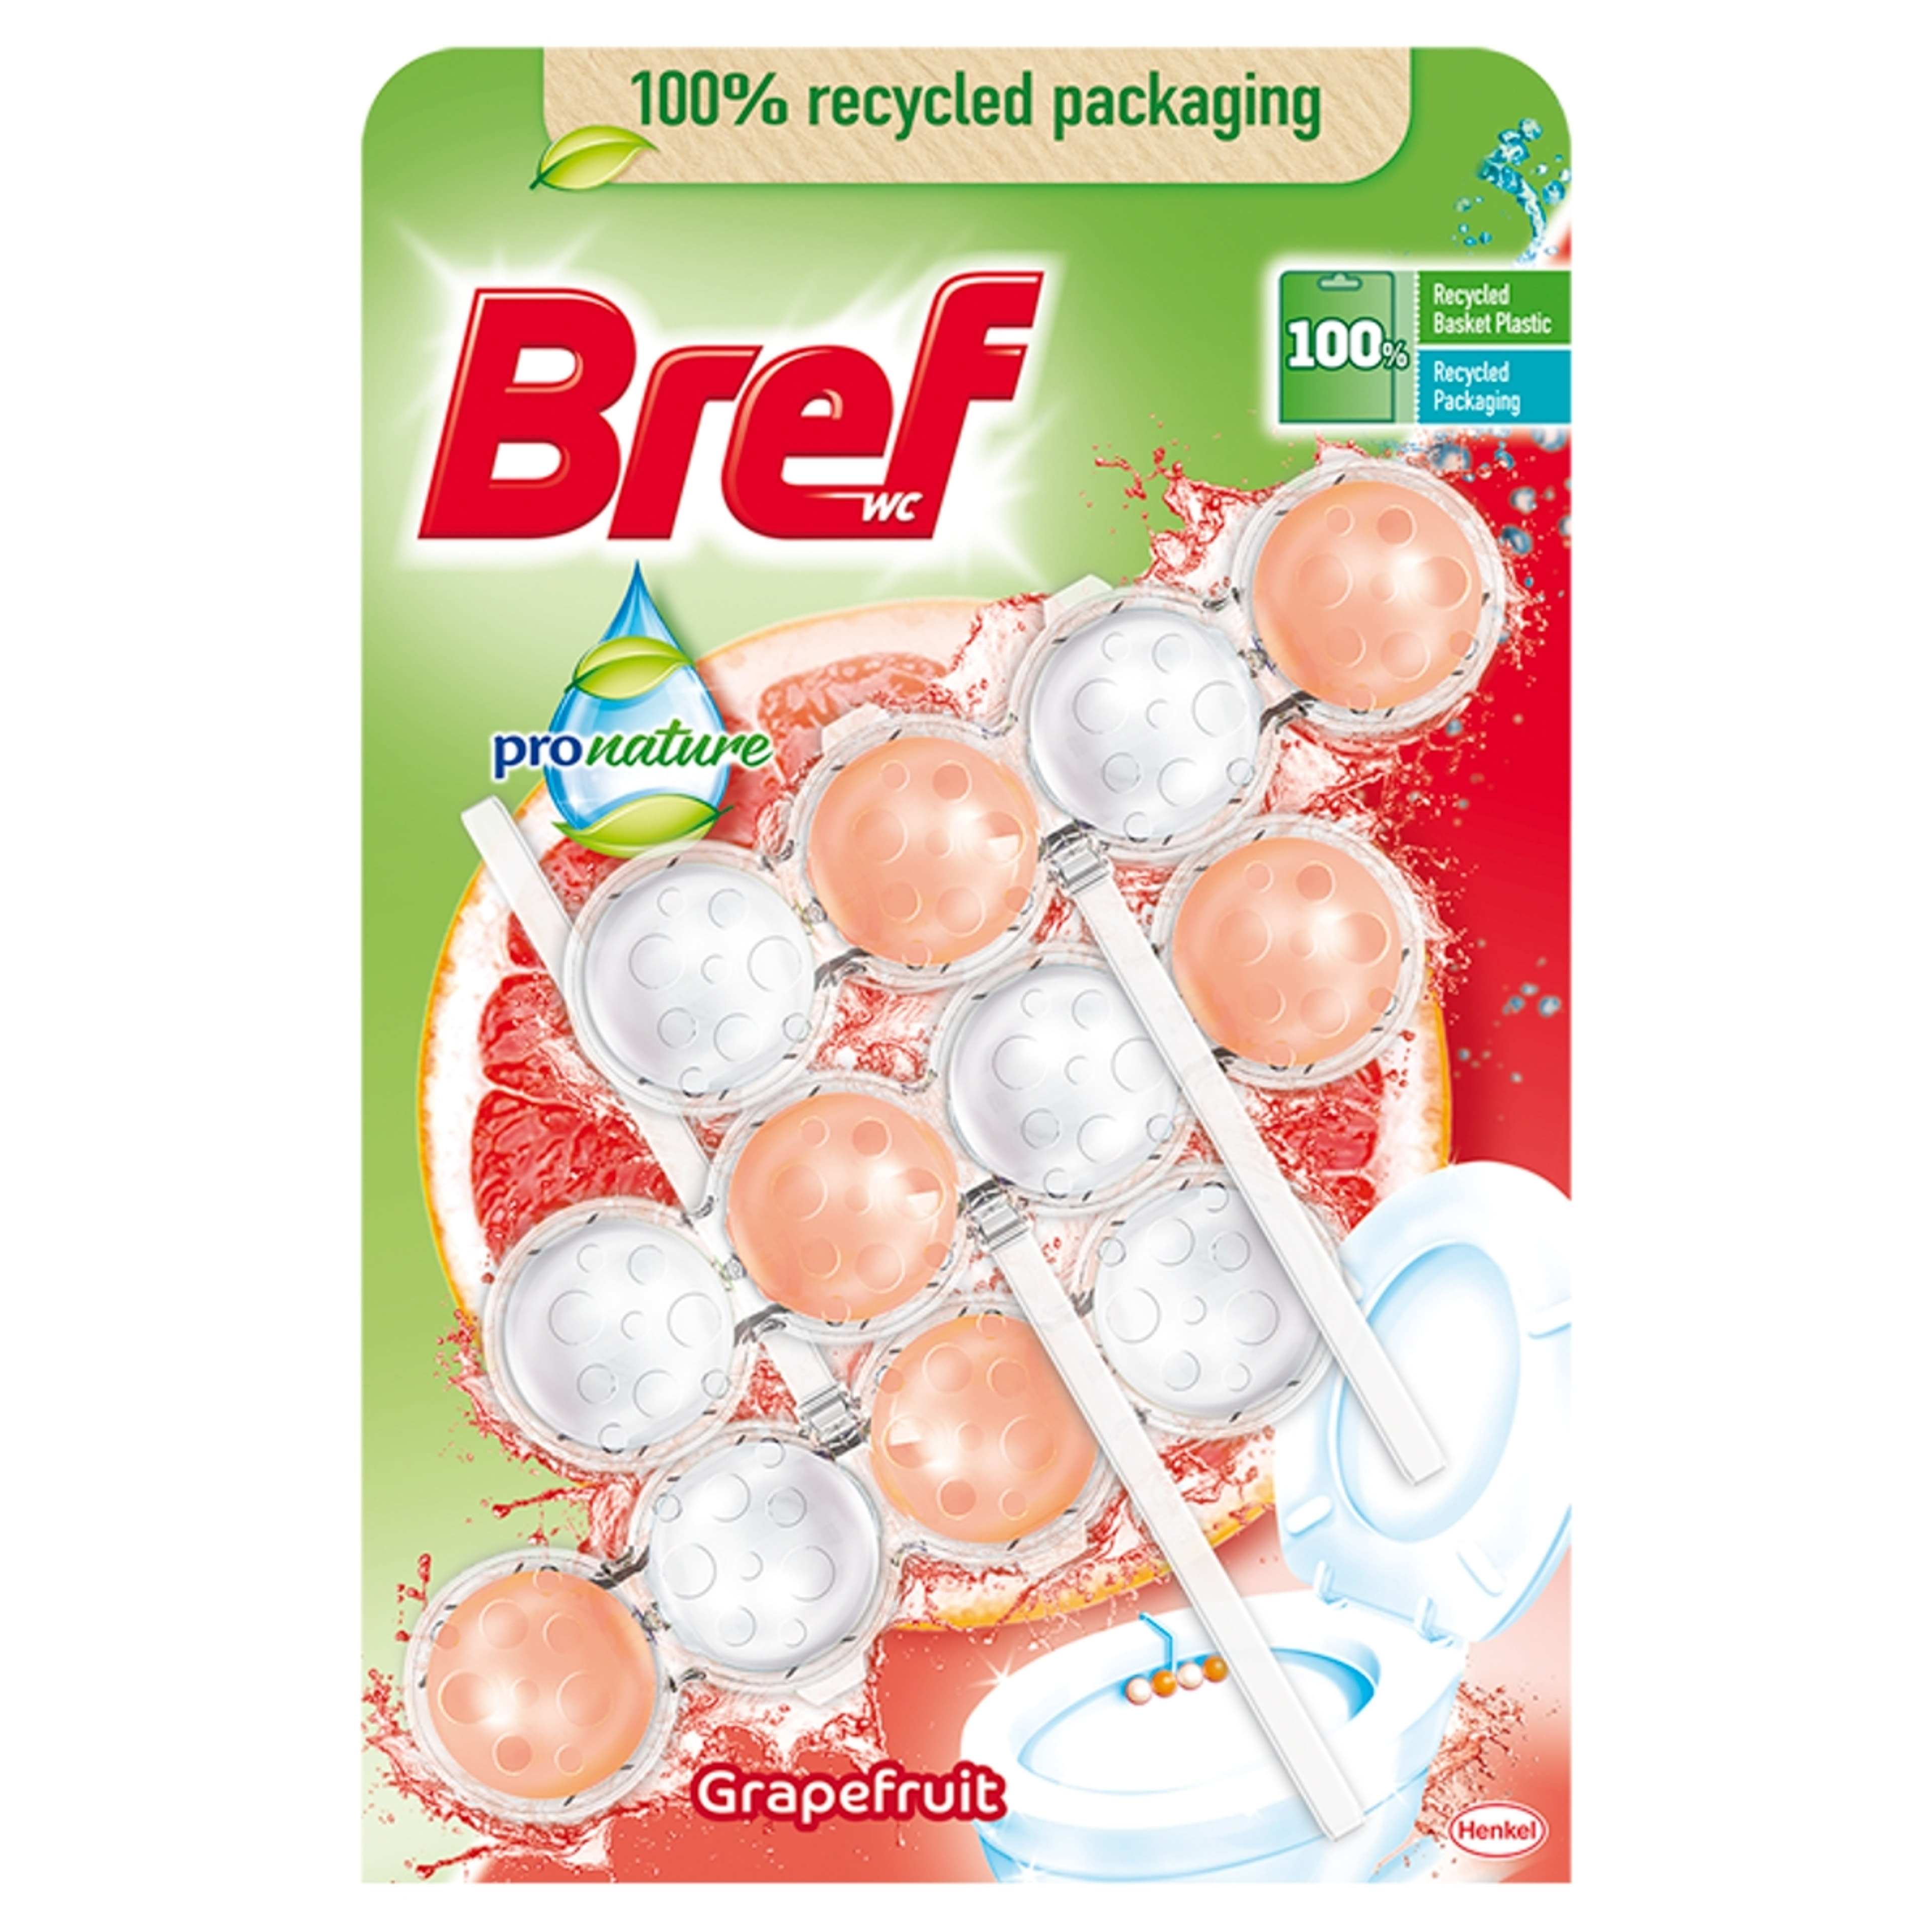 Bref Power Aktiv Pronat Grapefruit WC illatosító (3x50 g) - 150 g